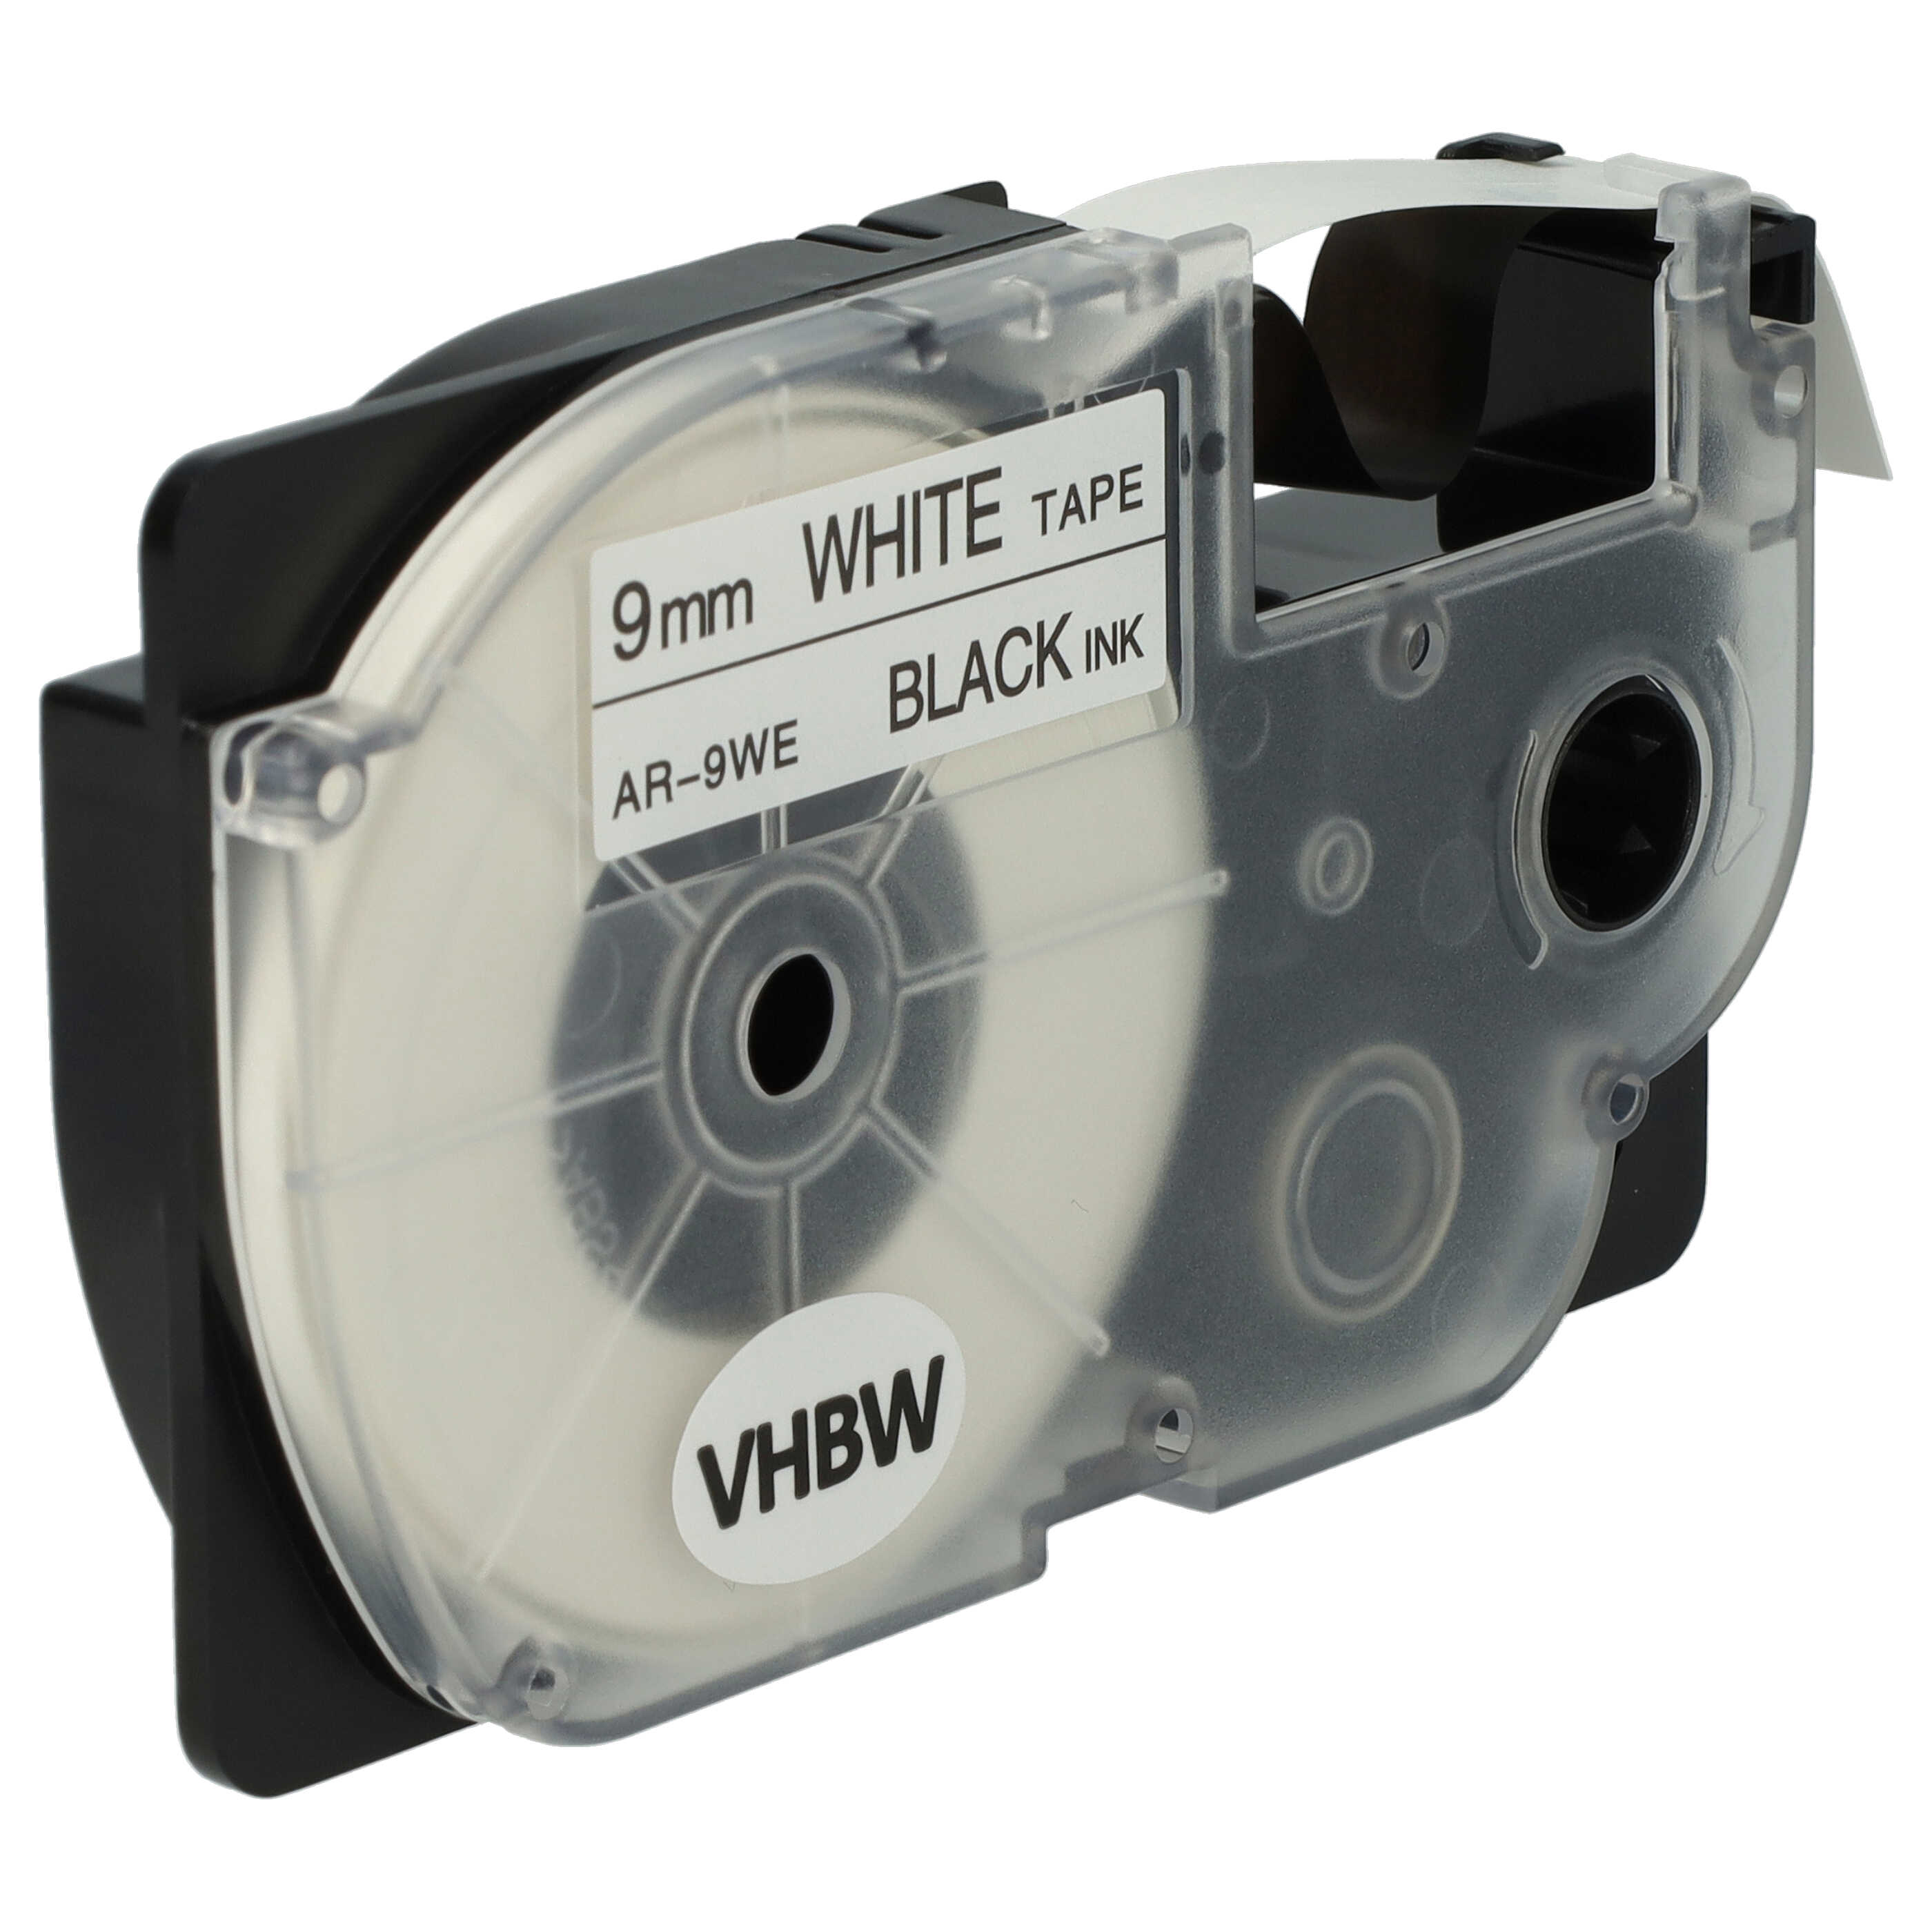 2x Cassettes à ruban remplacent Casio XR-9WE1 - 9mm lettrage Noir ruban Blanc